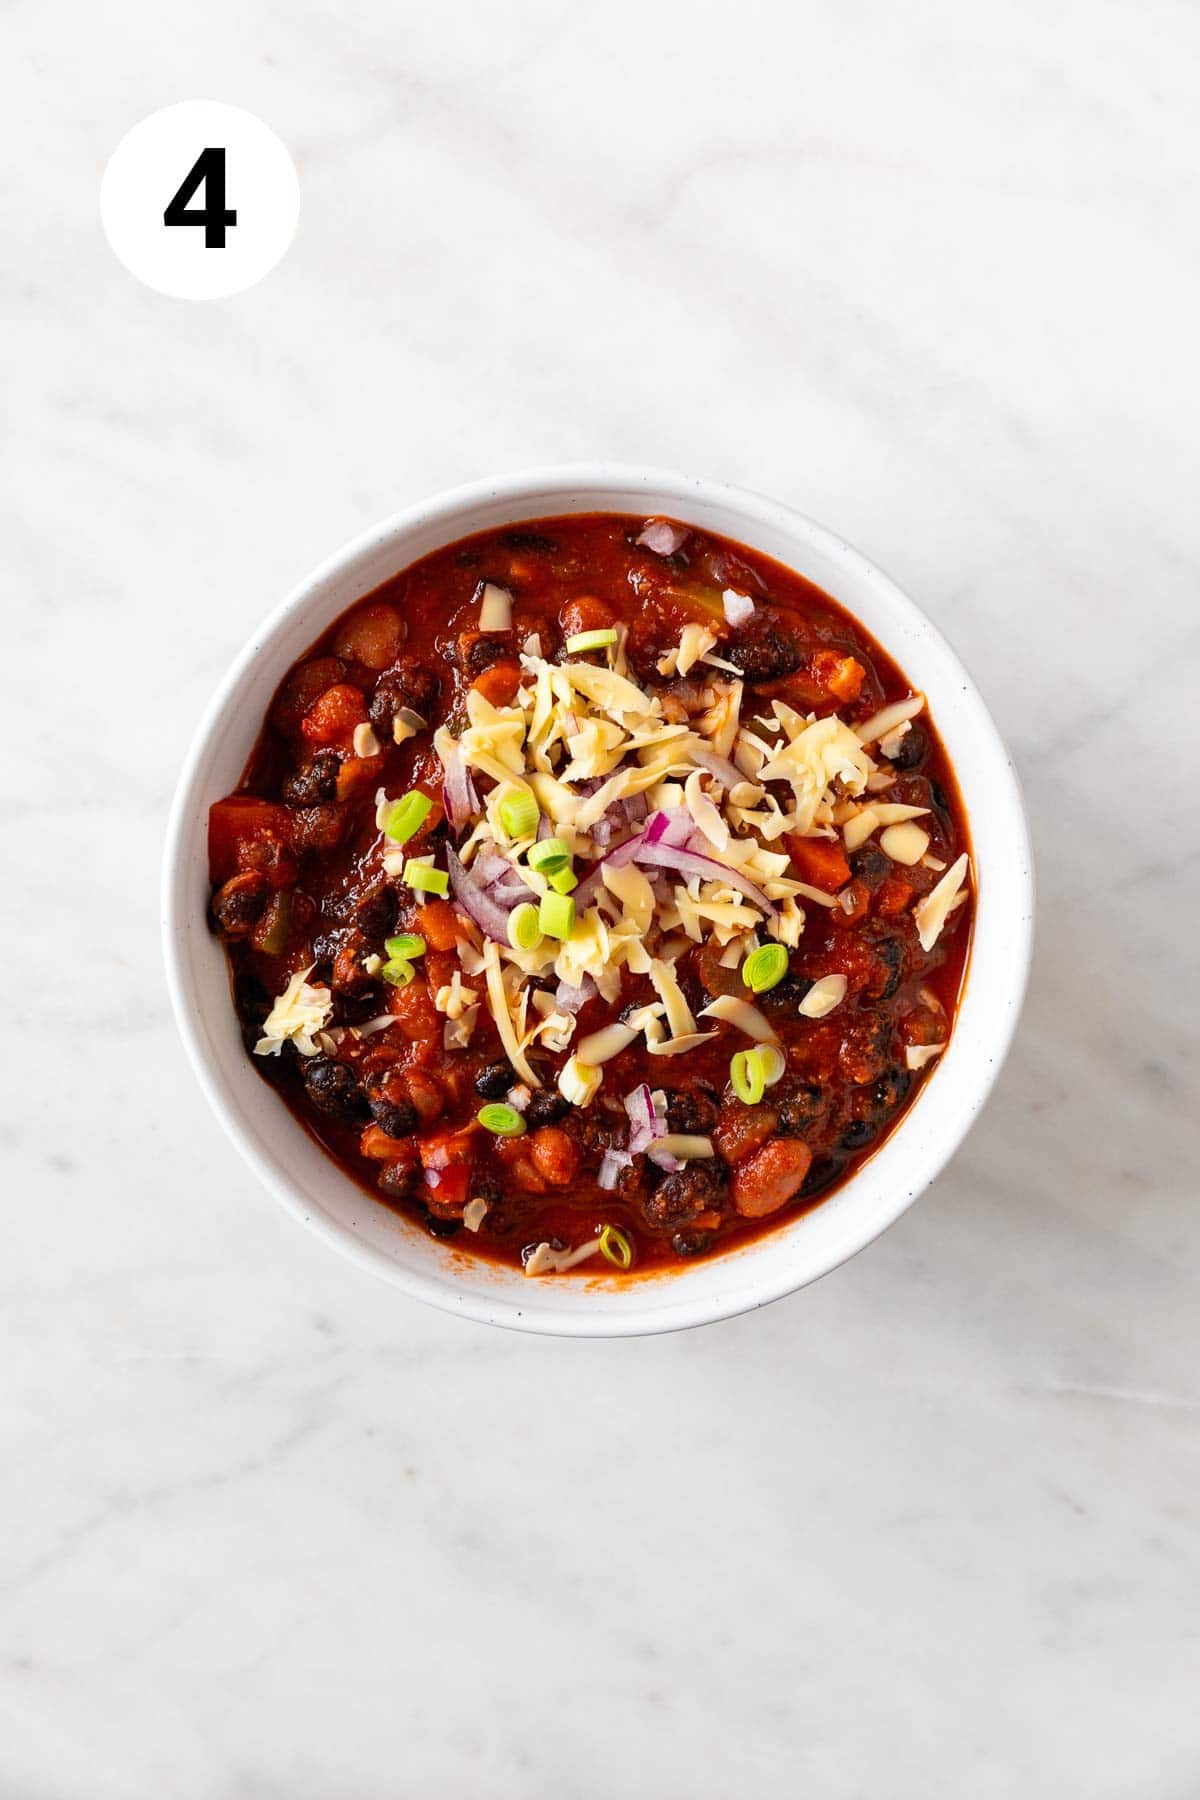 Bowl of garnished vegan chili.